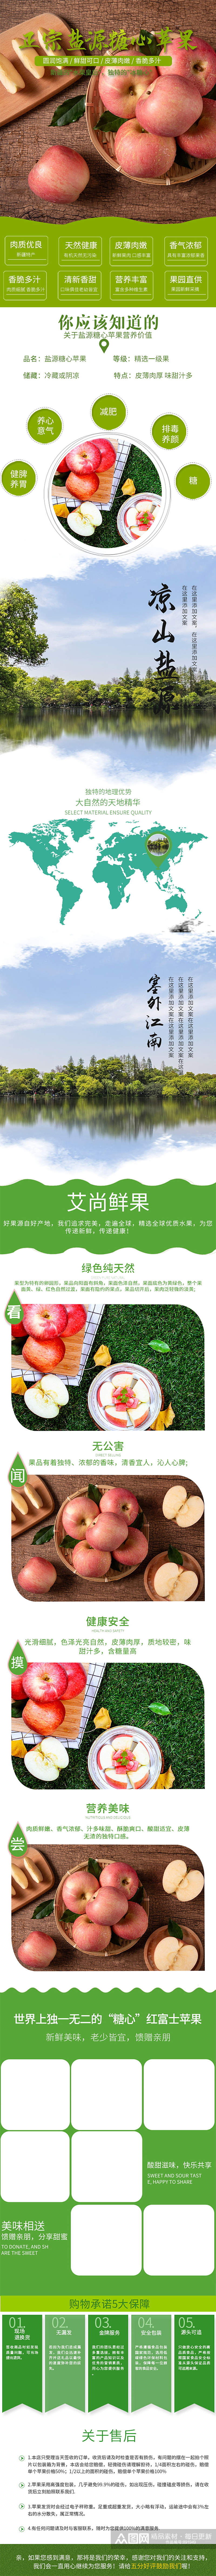 冬季水果红苹果营养健康绿色美食维生素食品素材